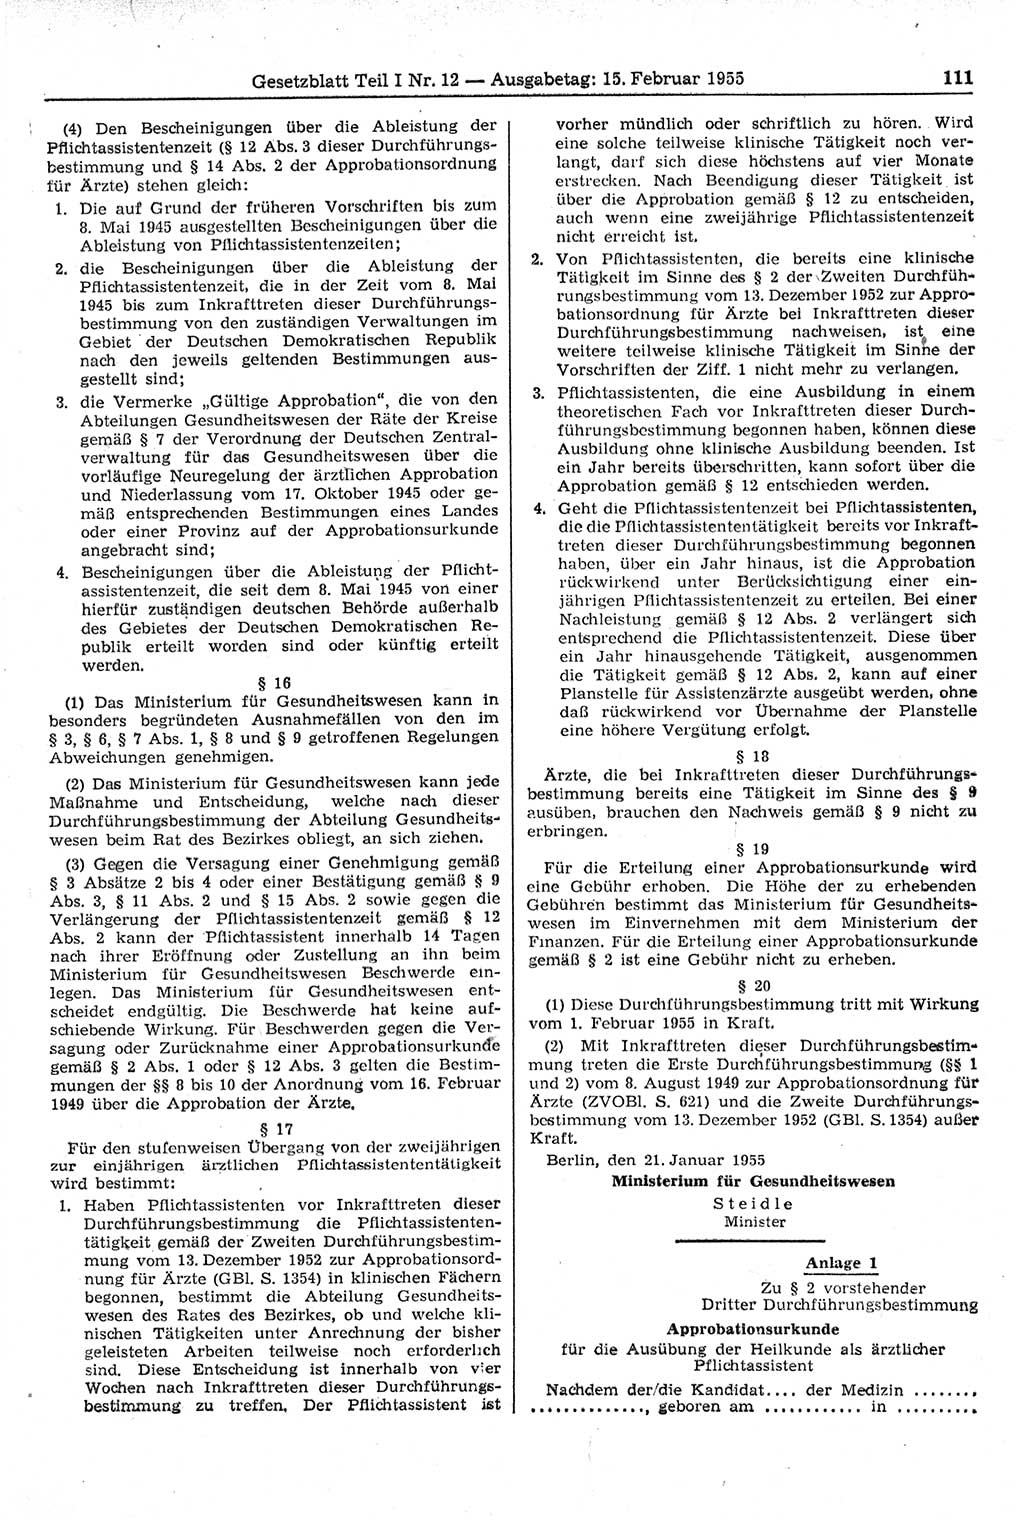 Gesetzblatt (GBl.) der Deutschen Demokratischen Republik (DDR) Teil Ⅰ 1955, Seite 111 (GBl. DDR Ⅰ 1955, S. 111)